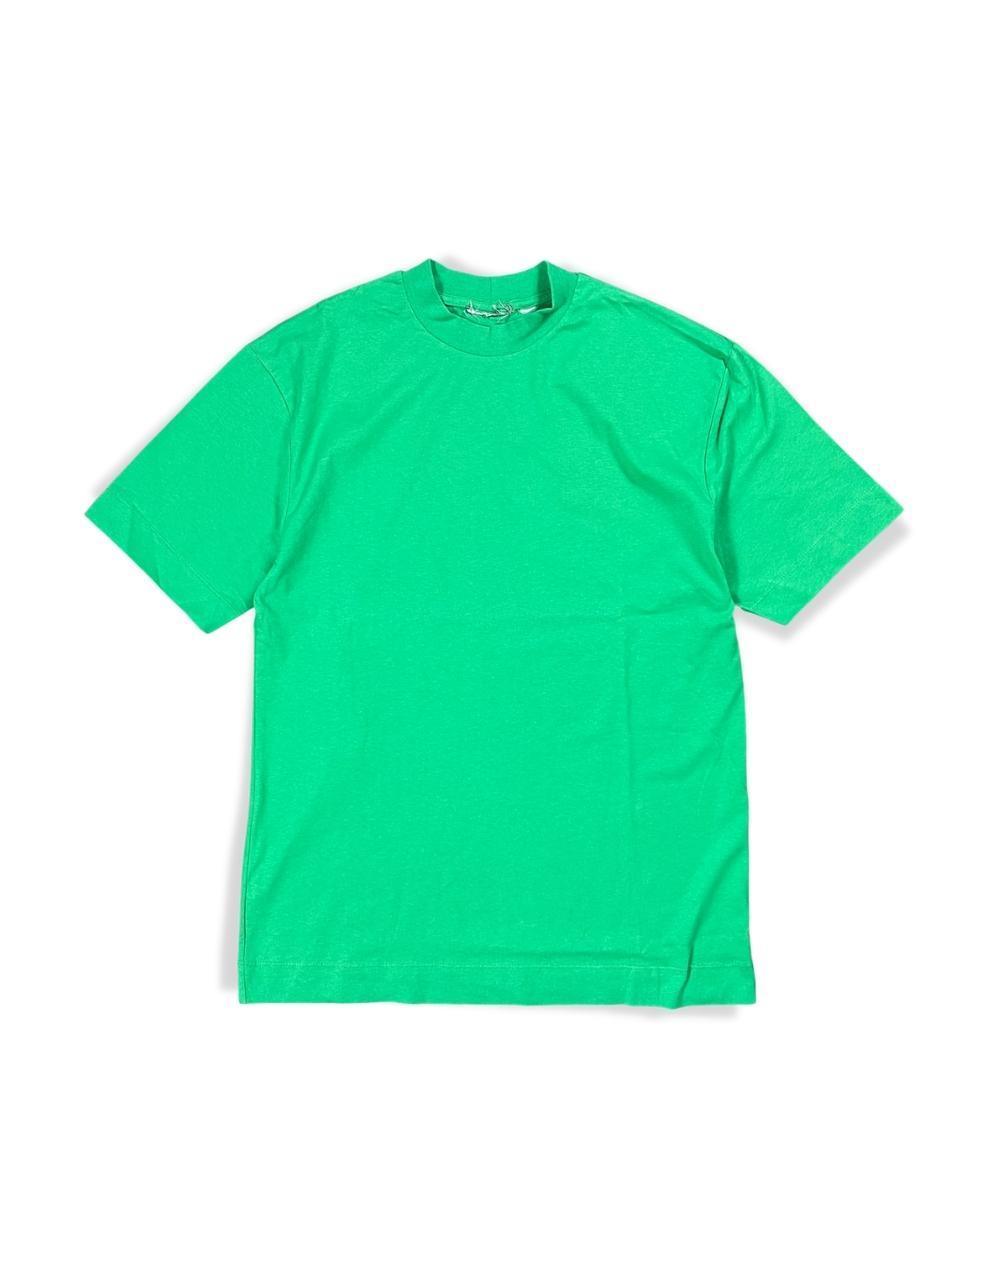 Men's Oversize Basic Green T-Shirt - STREET MODE ™